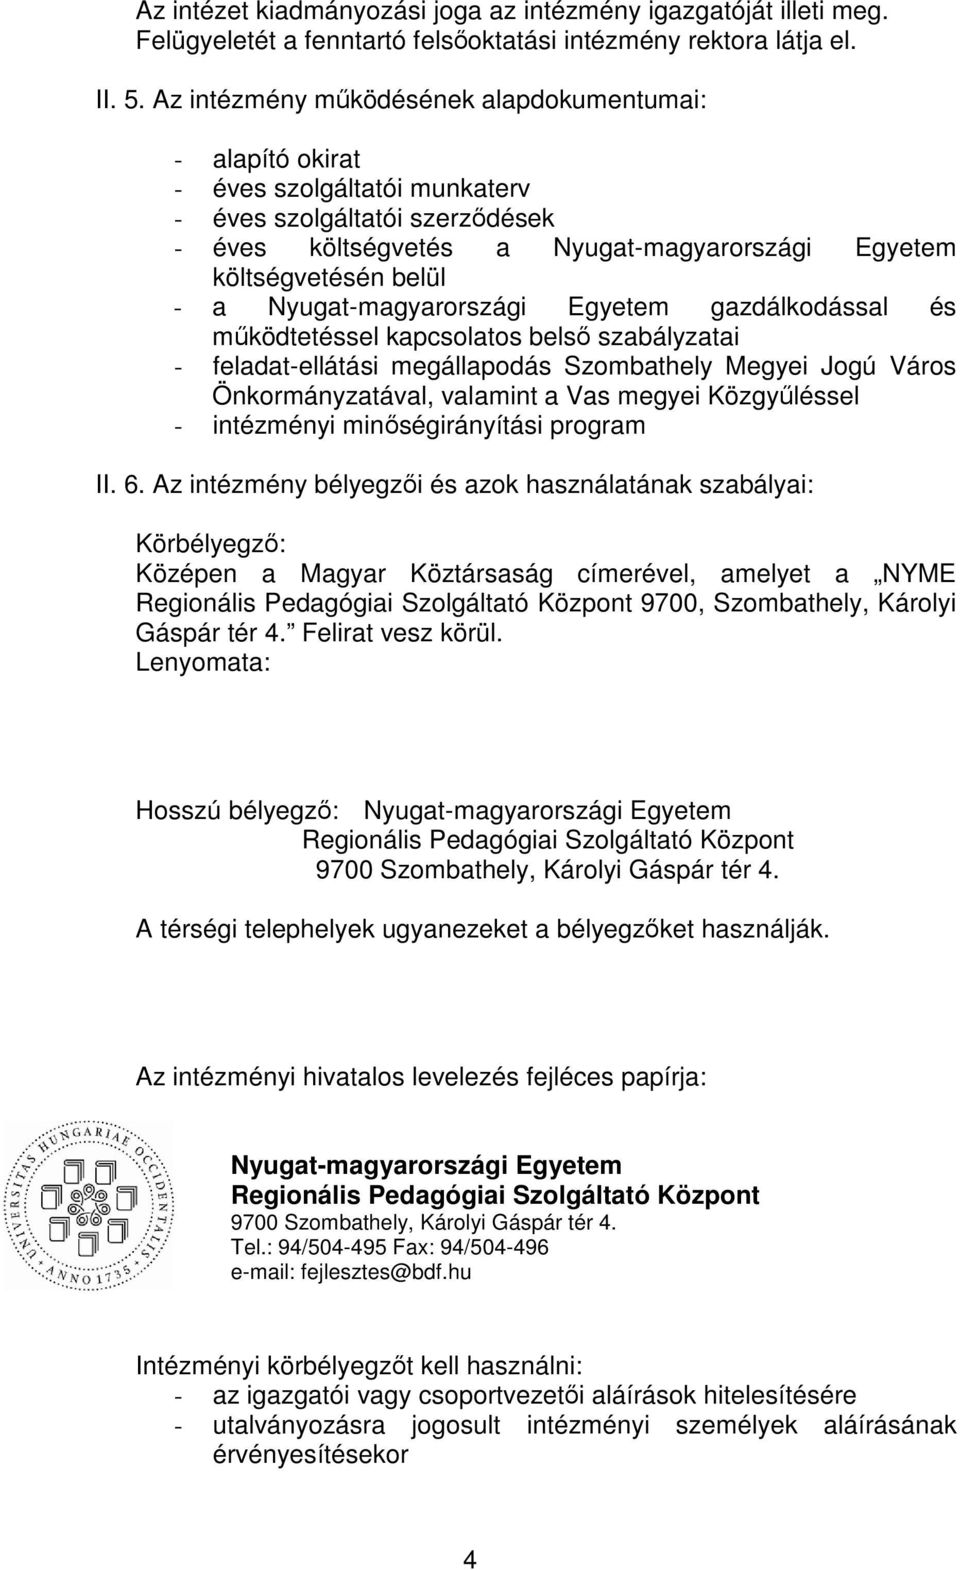 Nyugat-magyarországi Egyetem gazdálkodással és mködtetéssel kapcsolatos bels szabályzatai - feladat-ellátási megállapodás Szombathely Megyei Jogú Város Önkormányzatával, valamint a Vas megyei